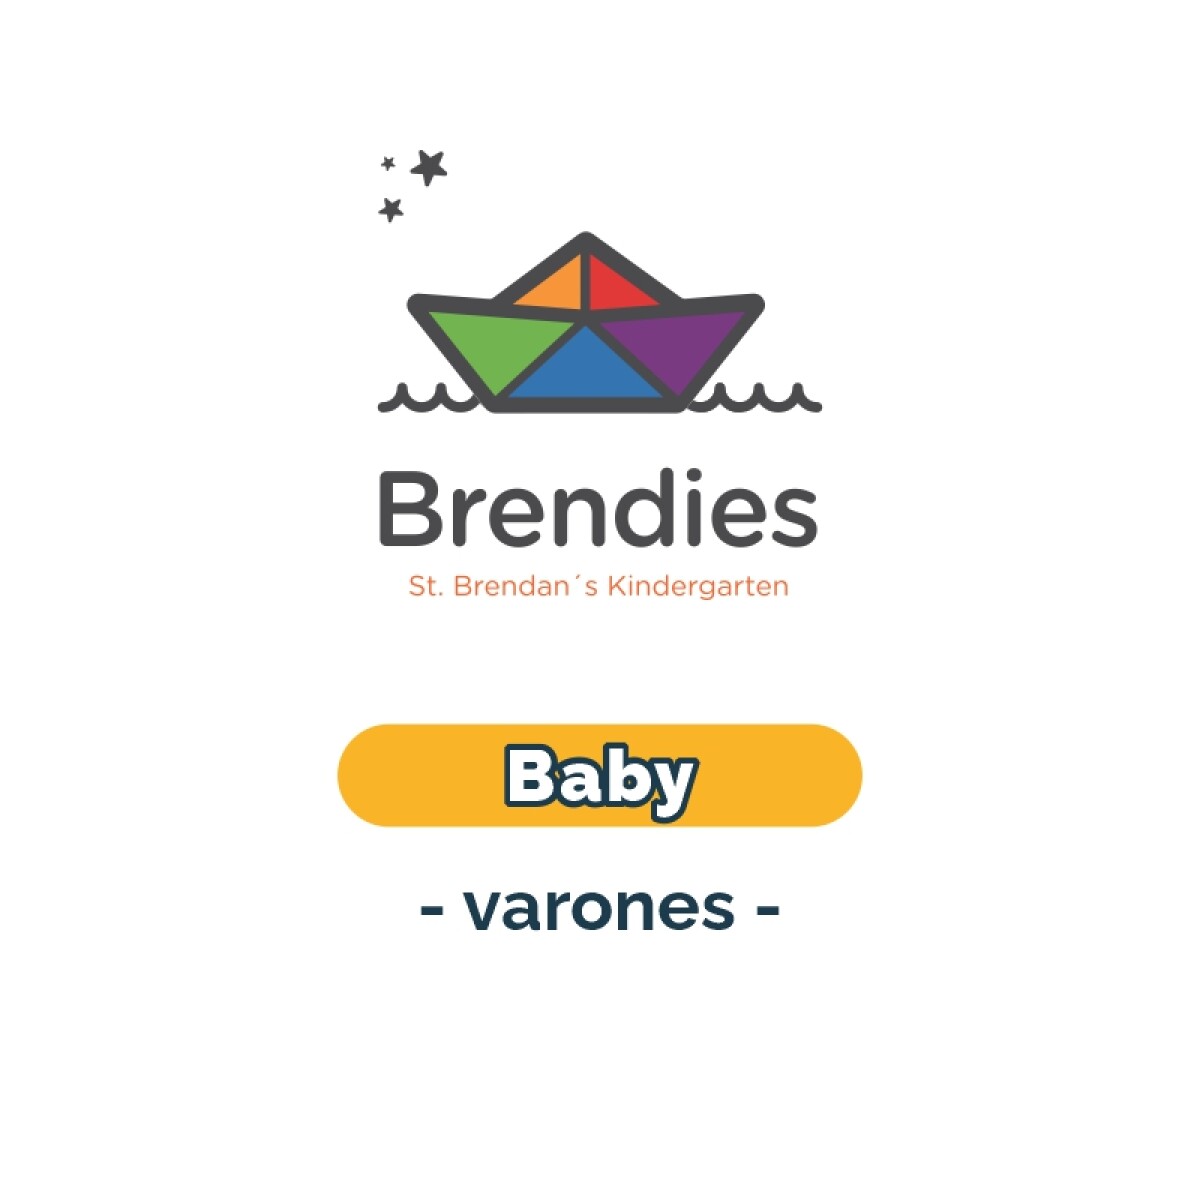 Lista de materiales - Brendies Baby varones SB 